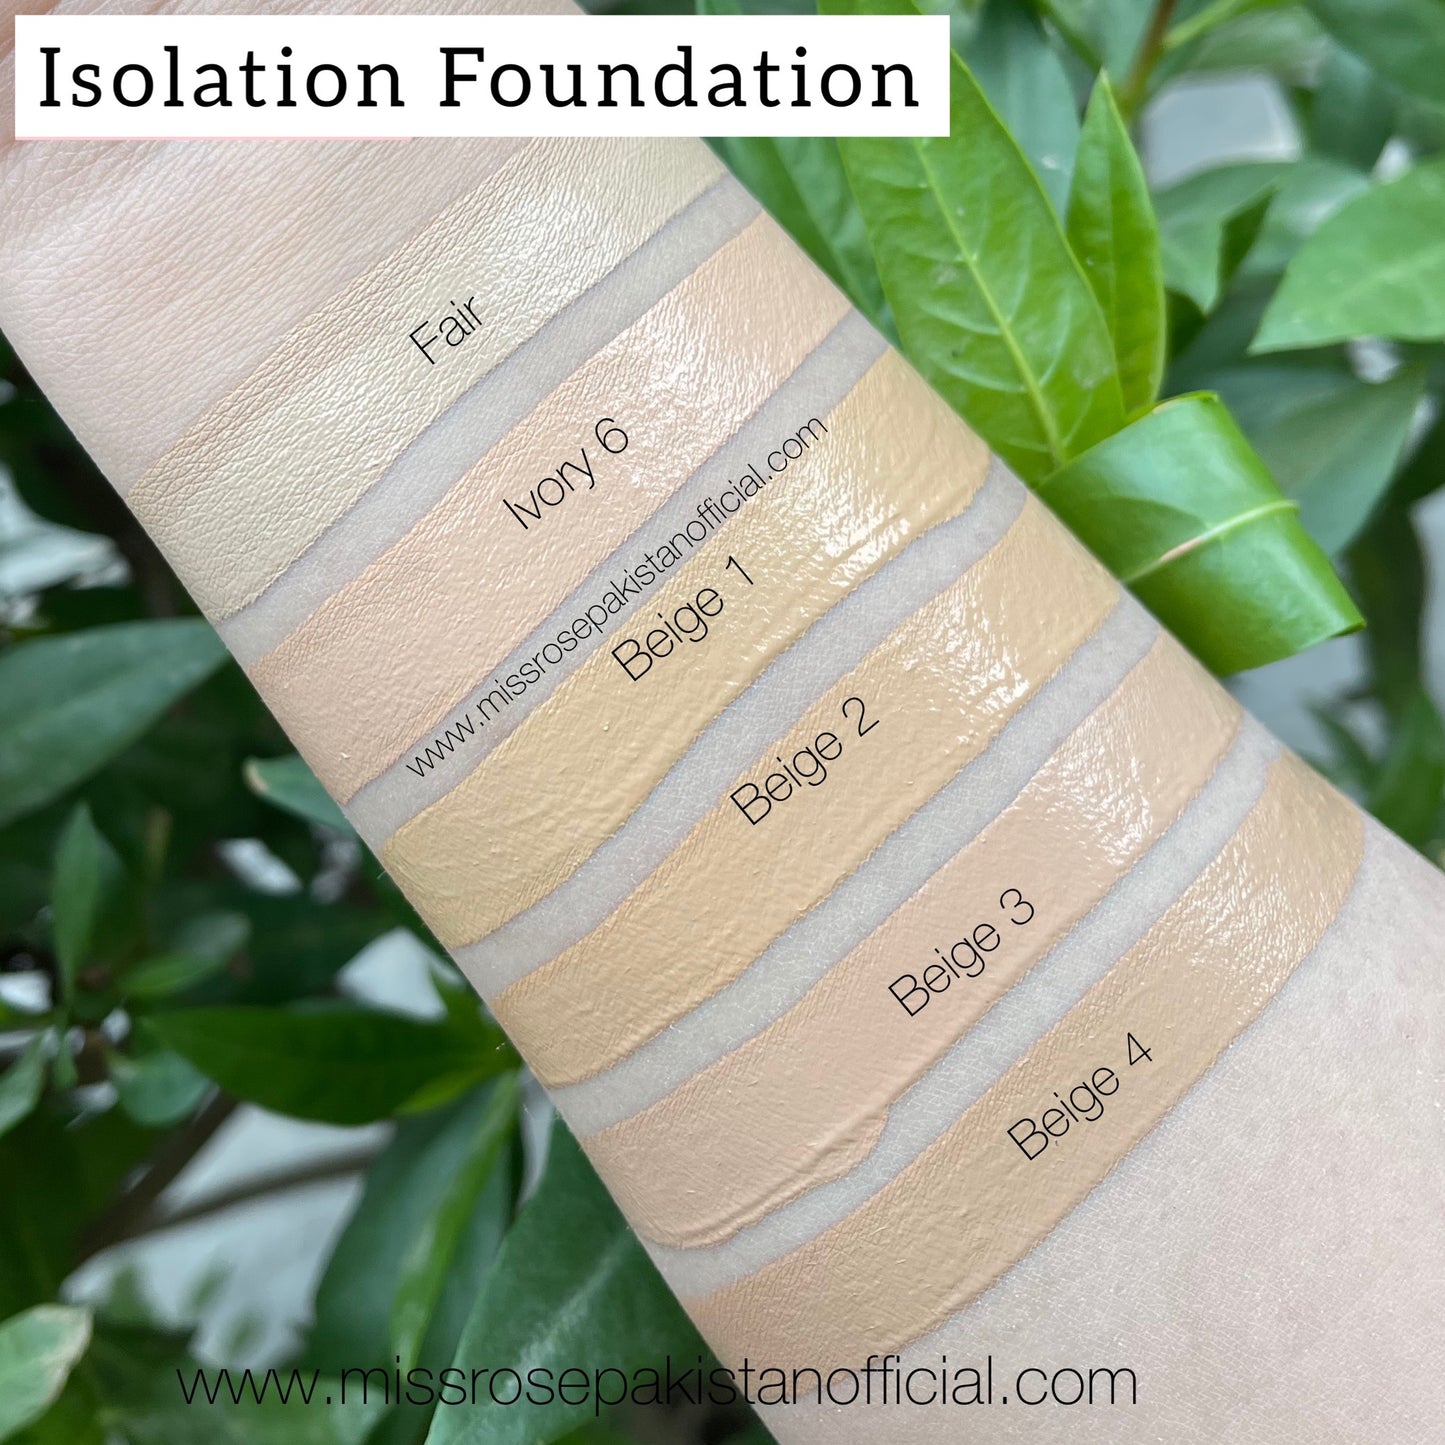 Miss Rose Isolation Foundation